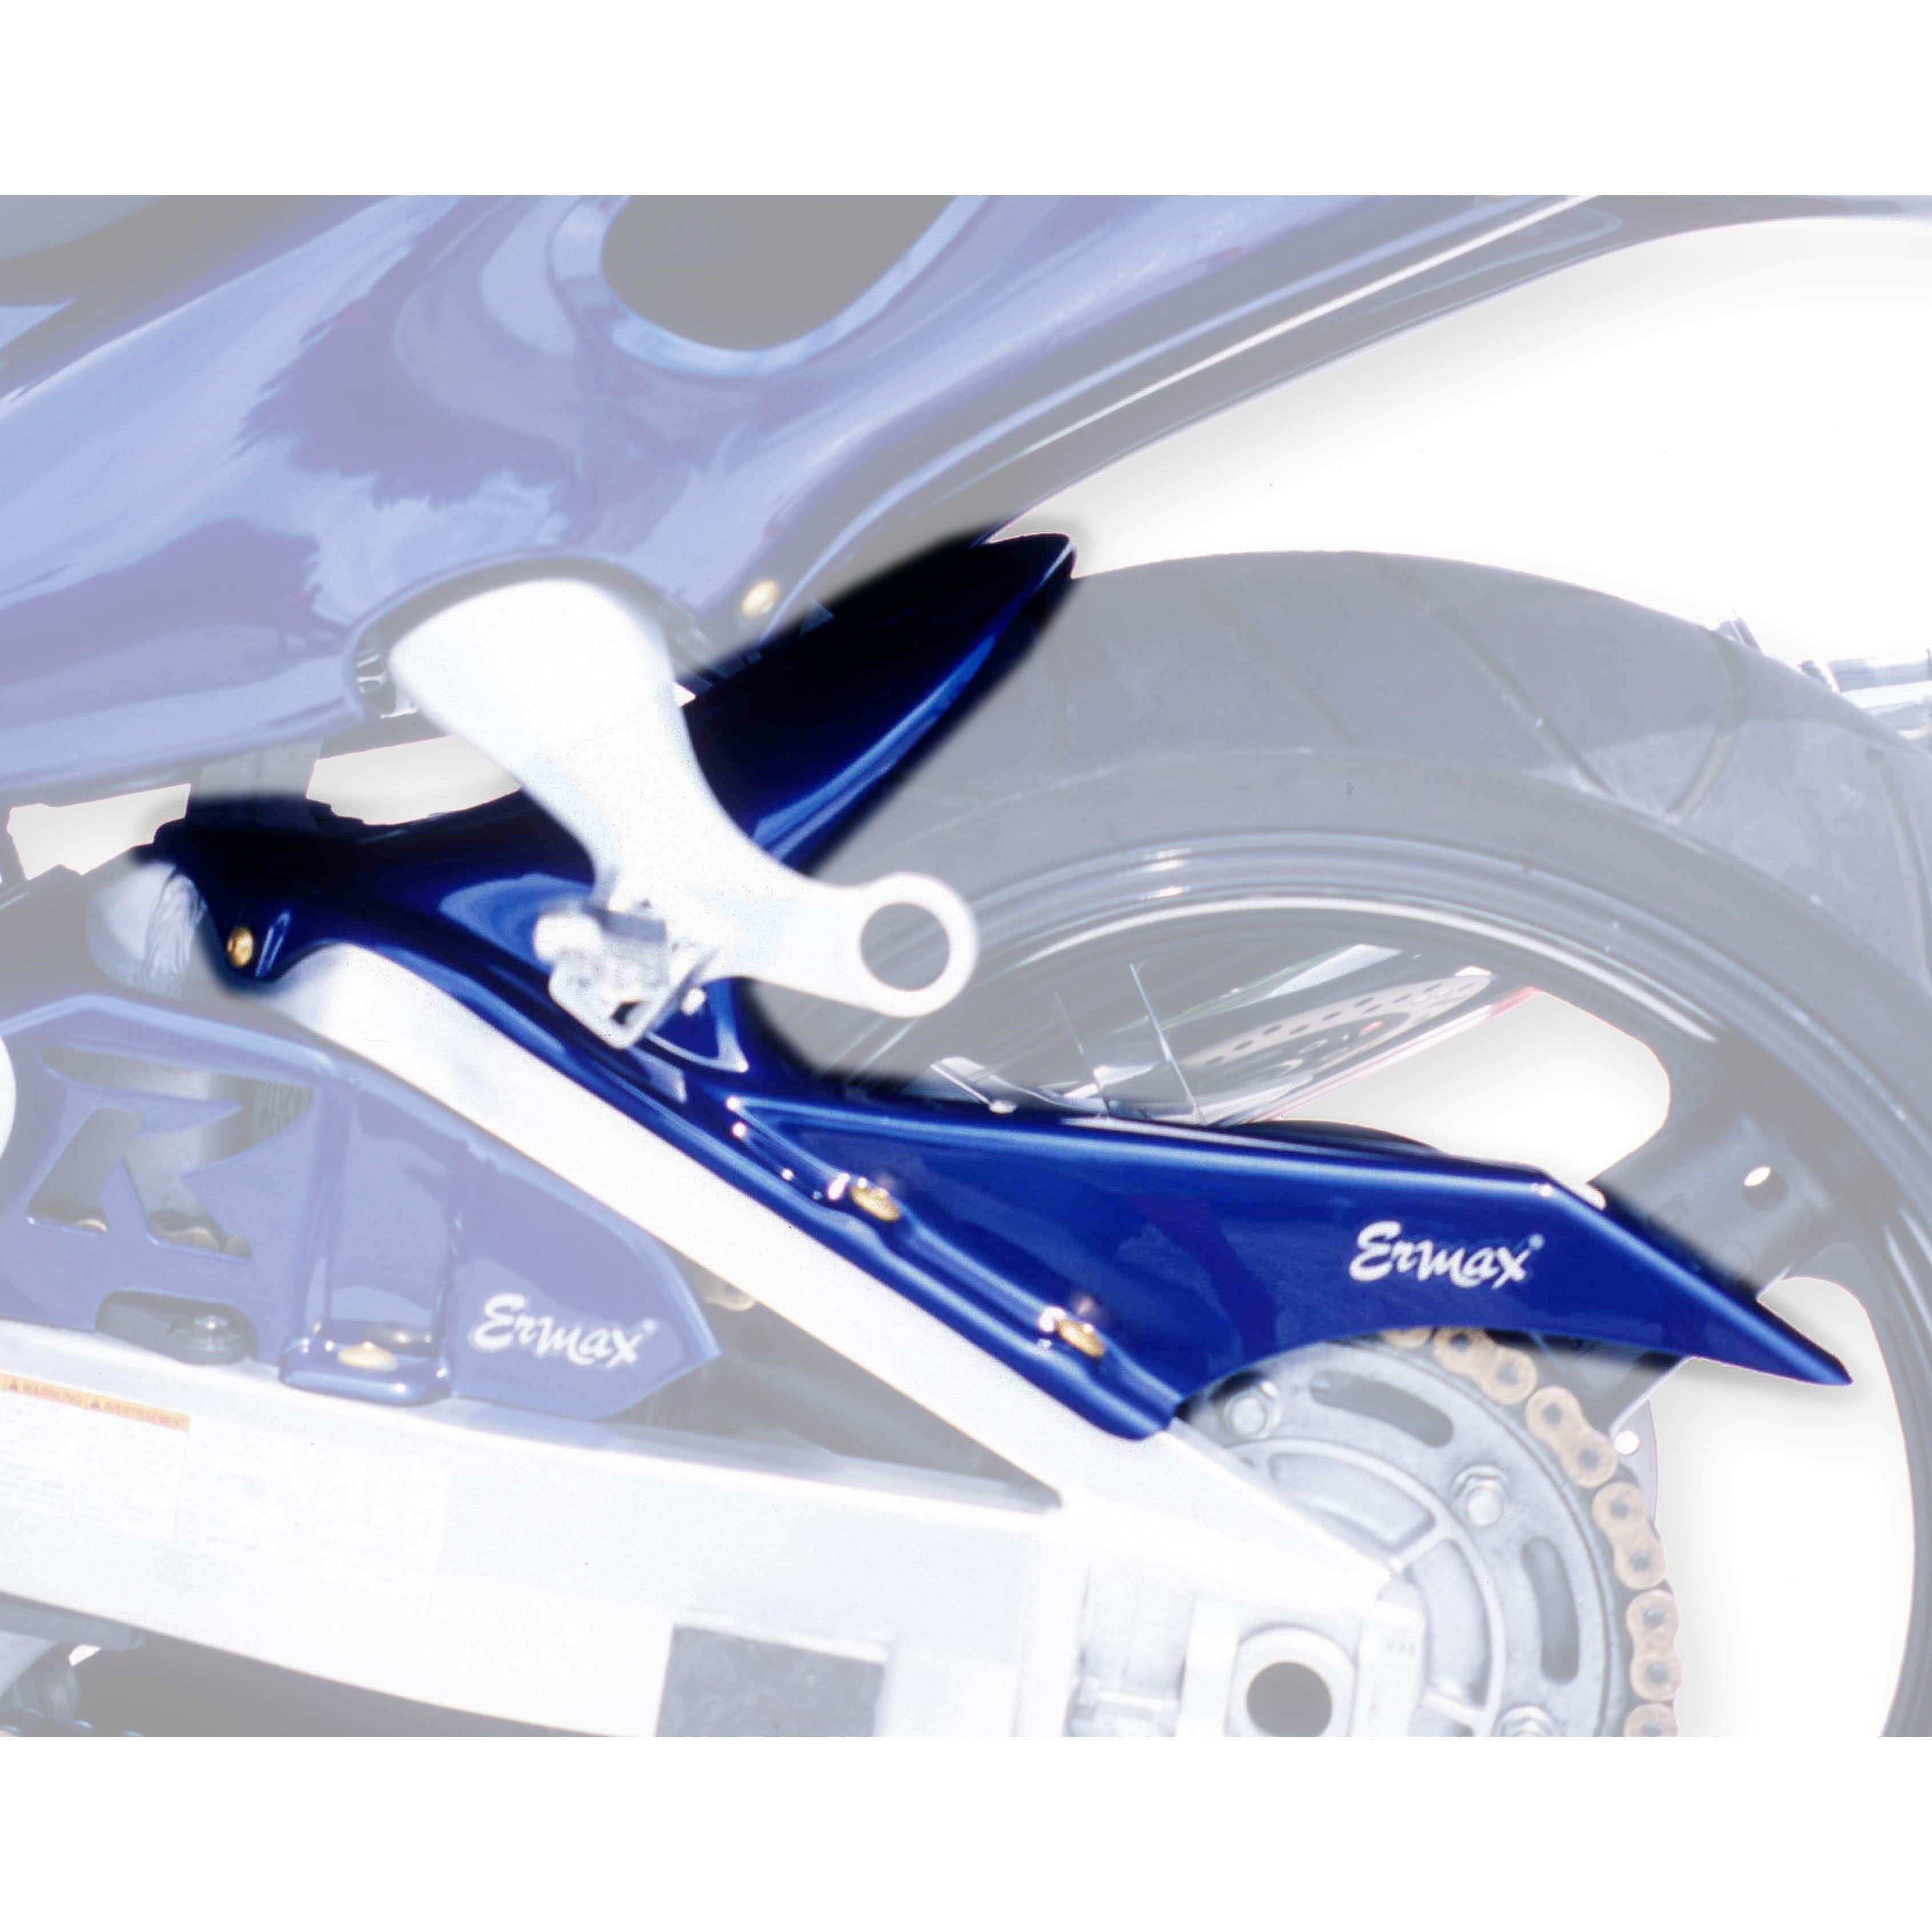 Ermax Hugger | Metallic Blue (Pearl Vigour Blue) | Suzuki Hayabusa GSX1300R 2014>2017-E730462088-Huggers-Pyramid Motorcycle Accessories